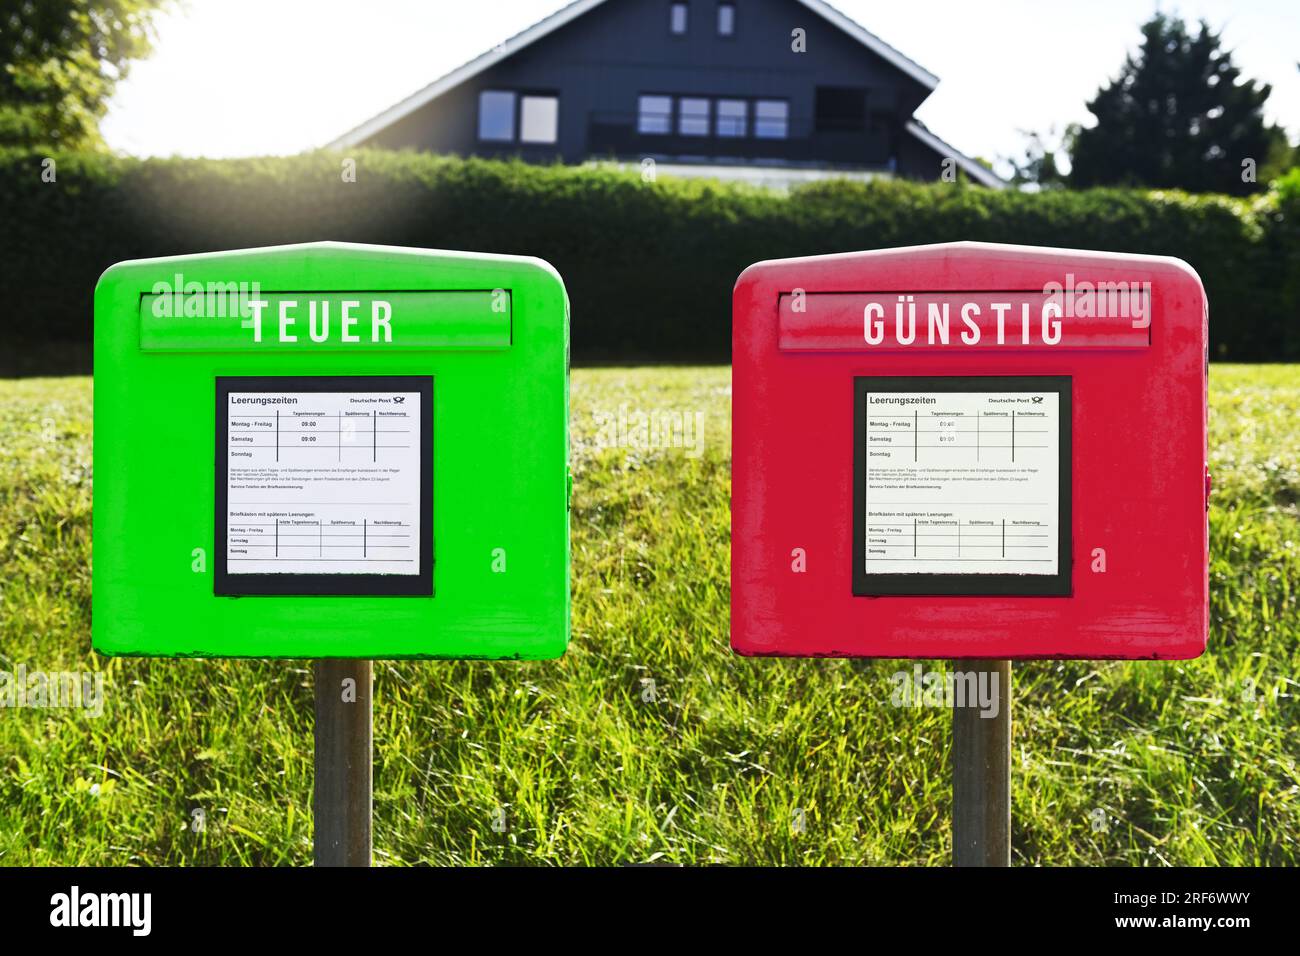 FOTOMONTAGE, Grüner und Roter Briefkasten mit Aufschrift teuer und günstig,  Symbolfoto für eine Zwei-Klassen-Briefzustellung Photo Stock - Alamy